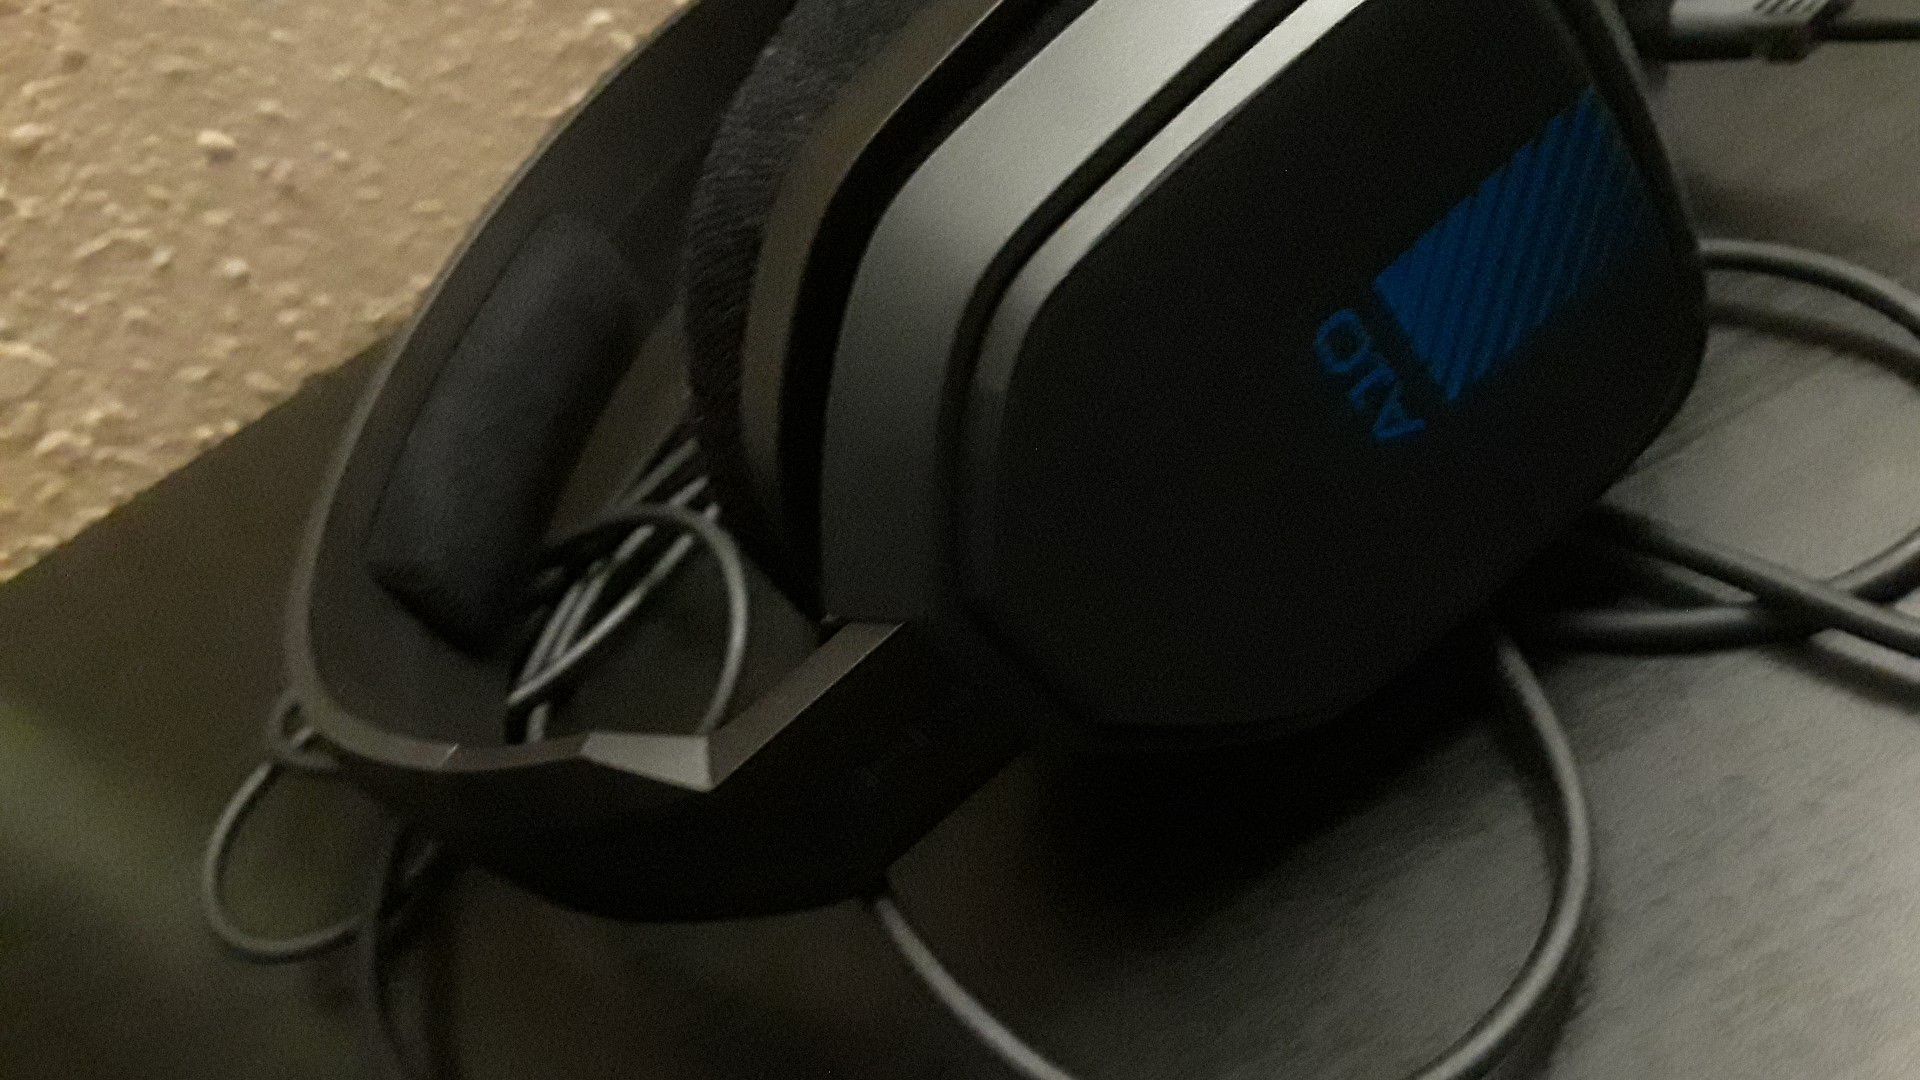 Astros headset